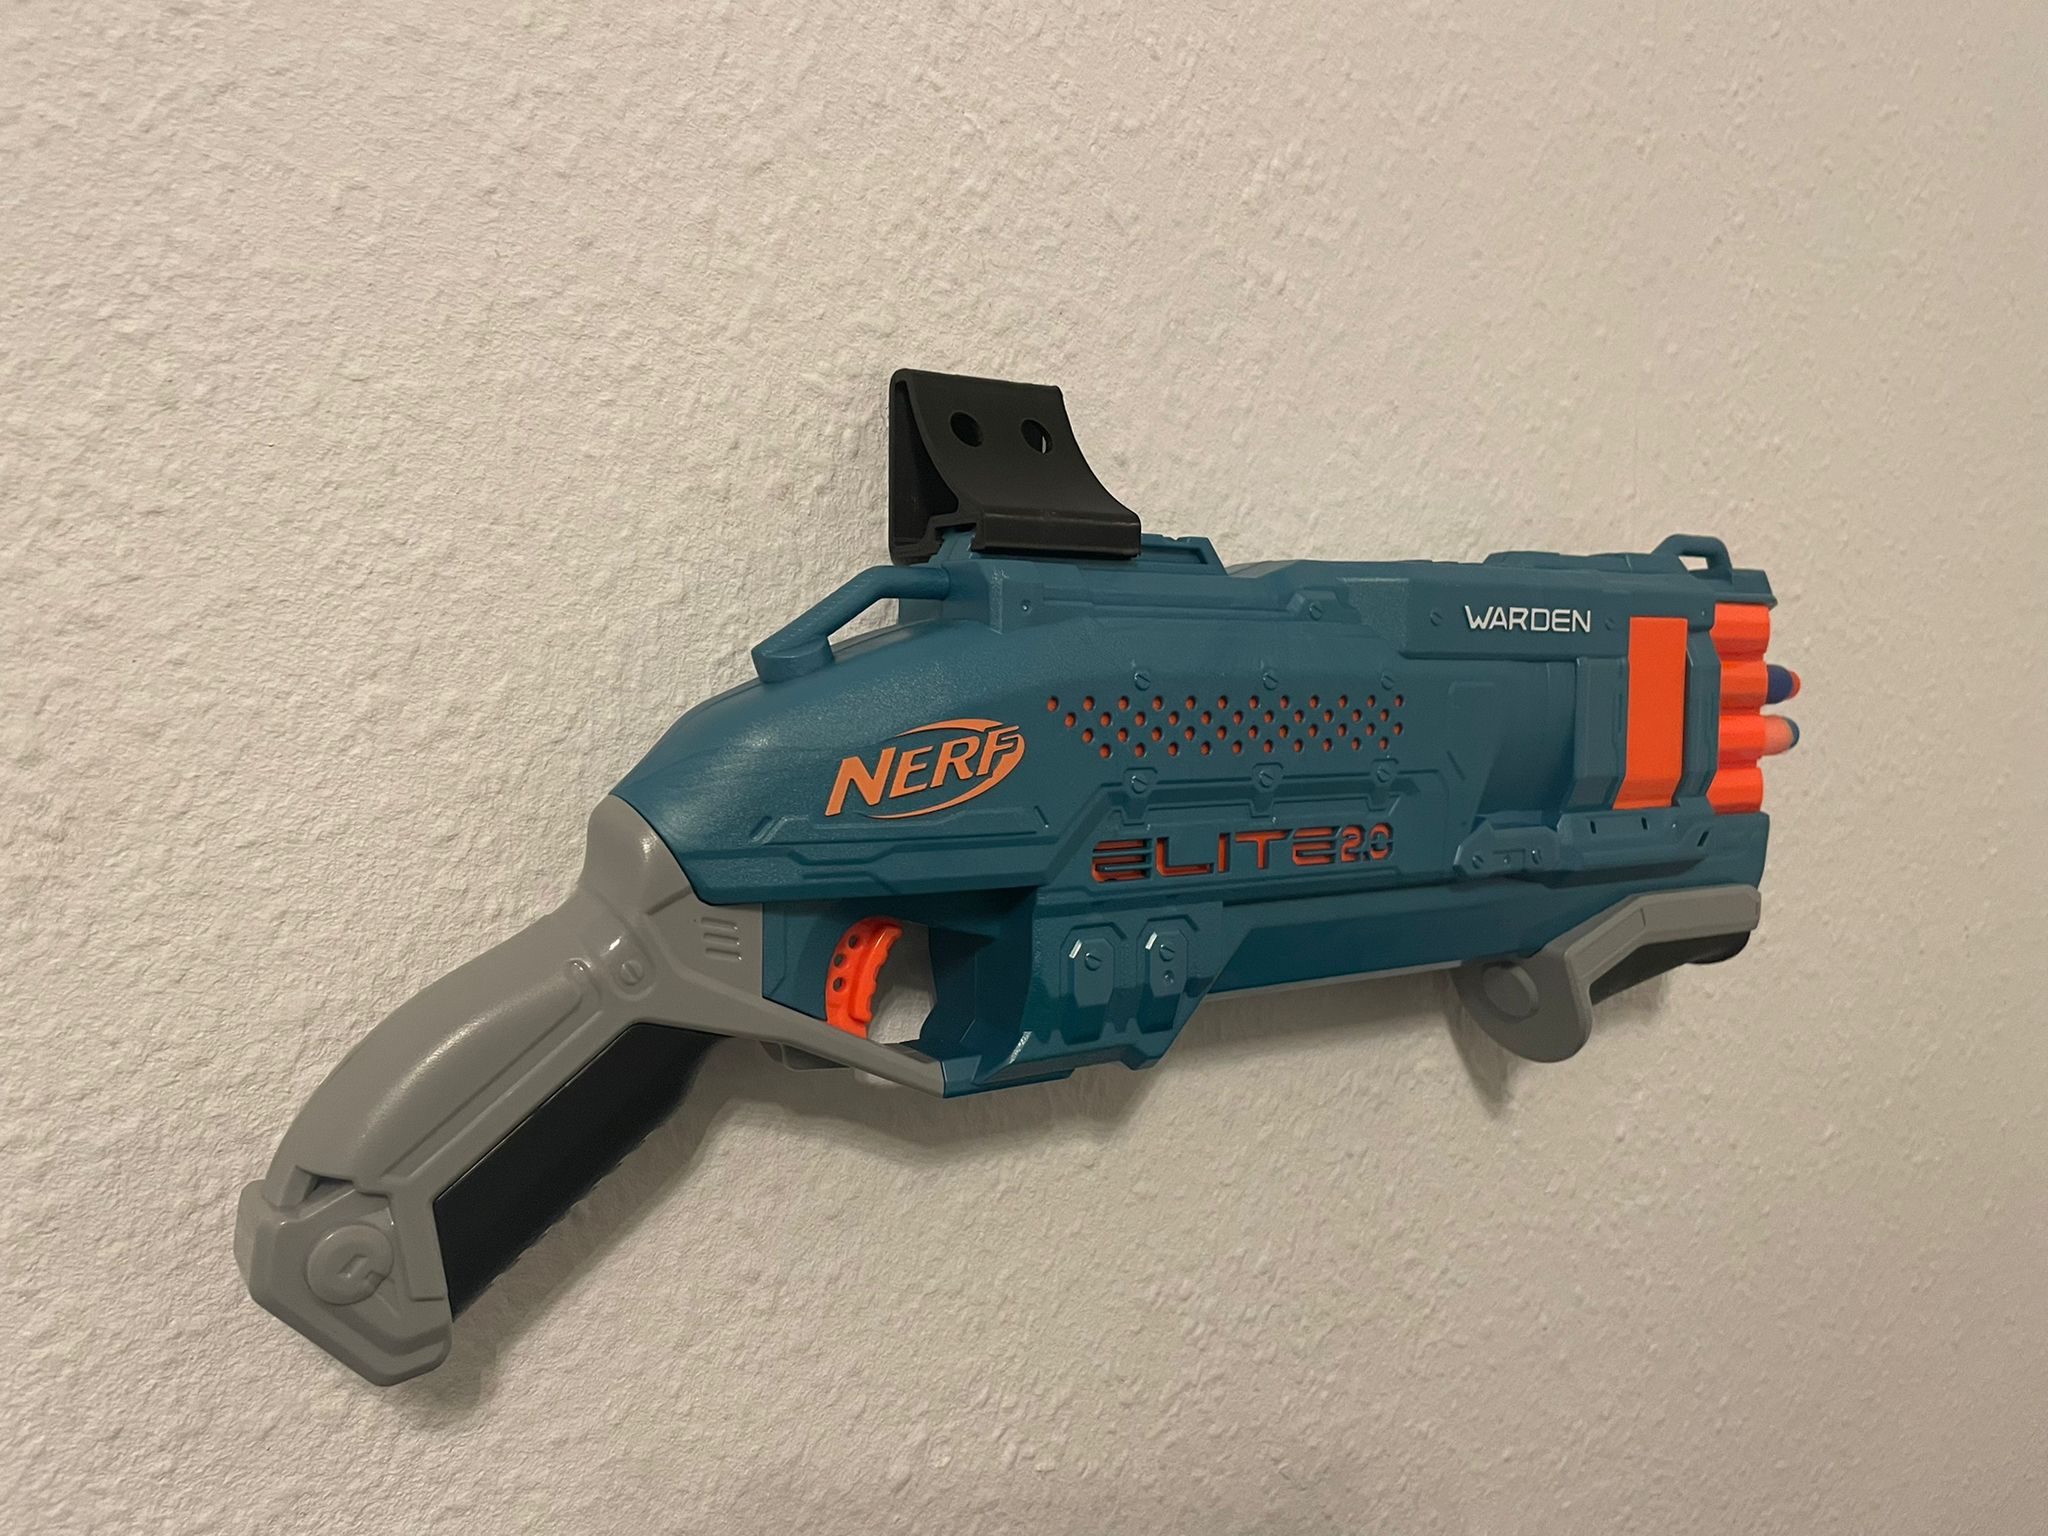 Wand Halterung für die Spielzeug Pistole Halter für NERF Blaster 